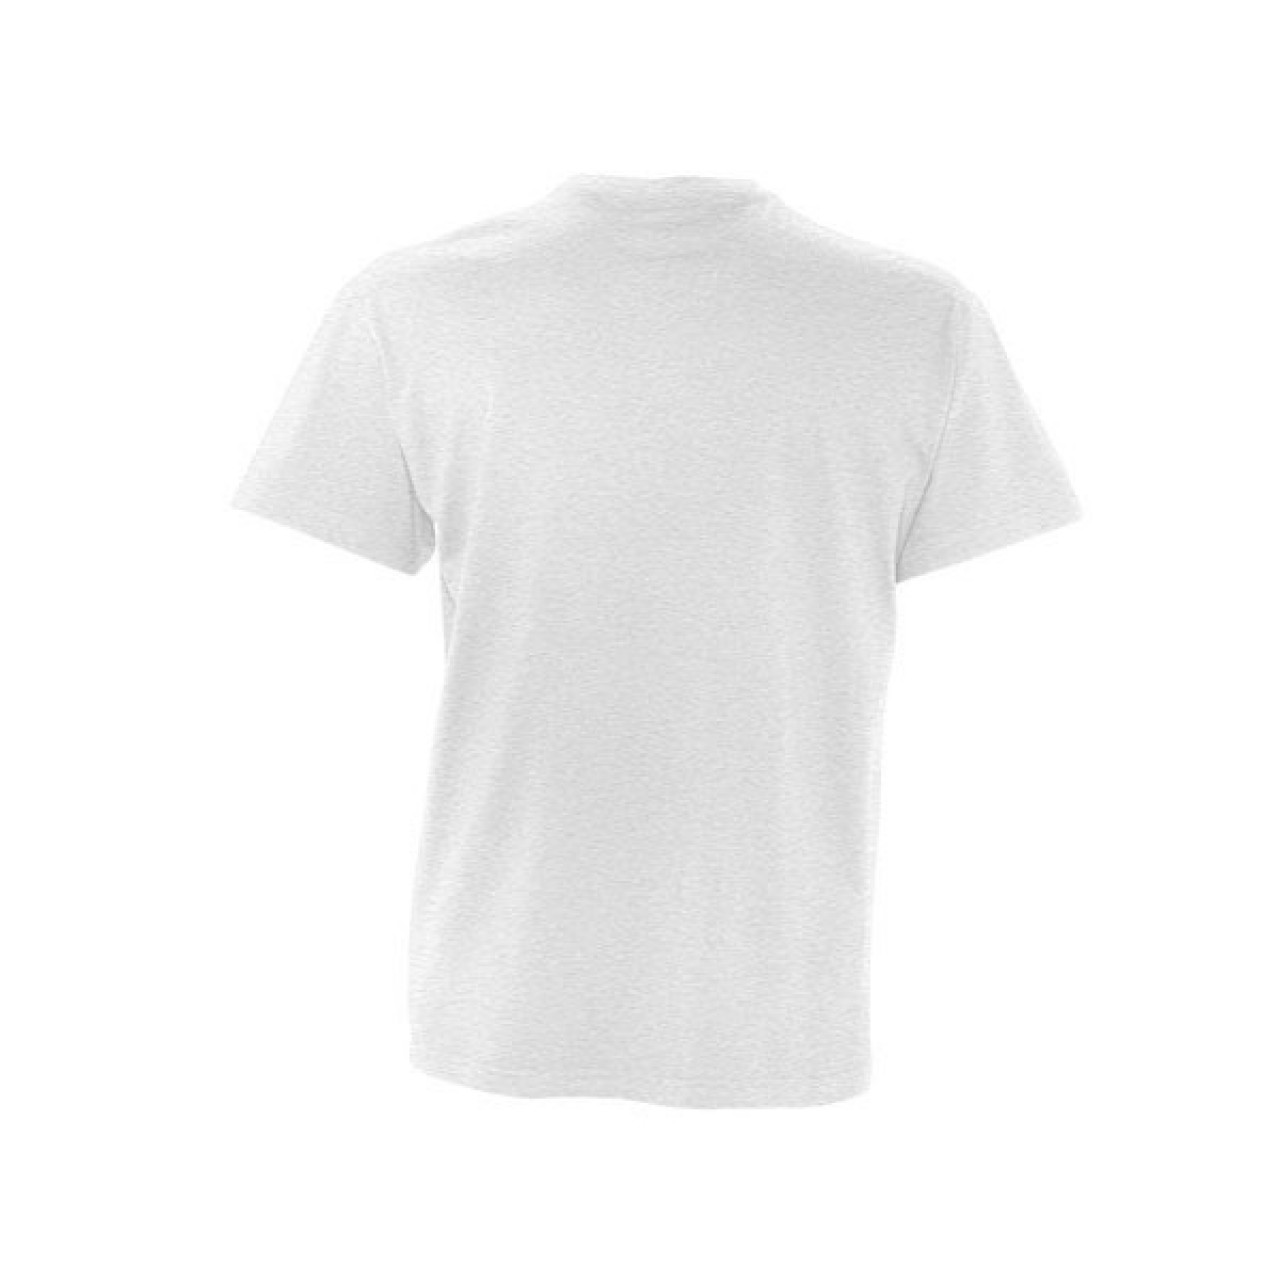 Ανδρικό T-shirt Sol s Victory Γκρι - Λευκό - 3149